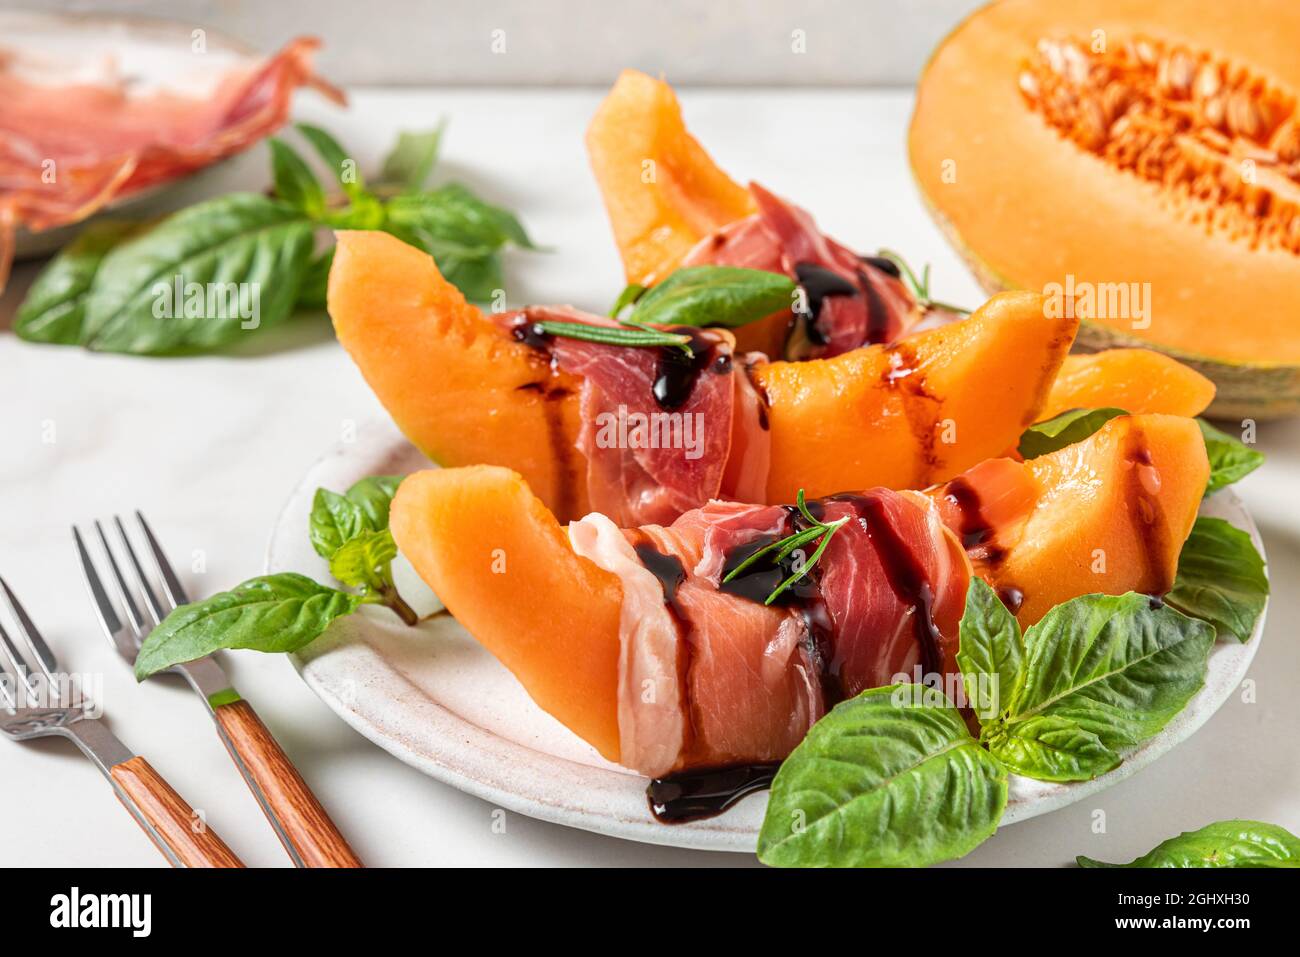 Prosciutto con fette di melone cantalupo, salsa all'aceto balsamico e basilico in un piatto con forchette su fondo bianco. Antipasto italiano. Primo piano. Foto Stock